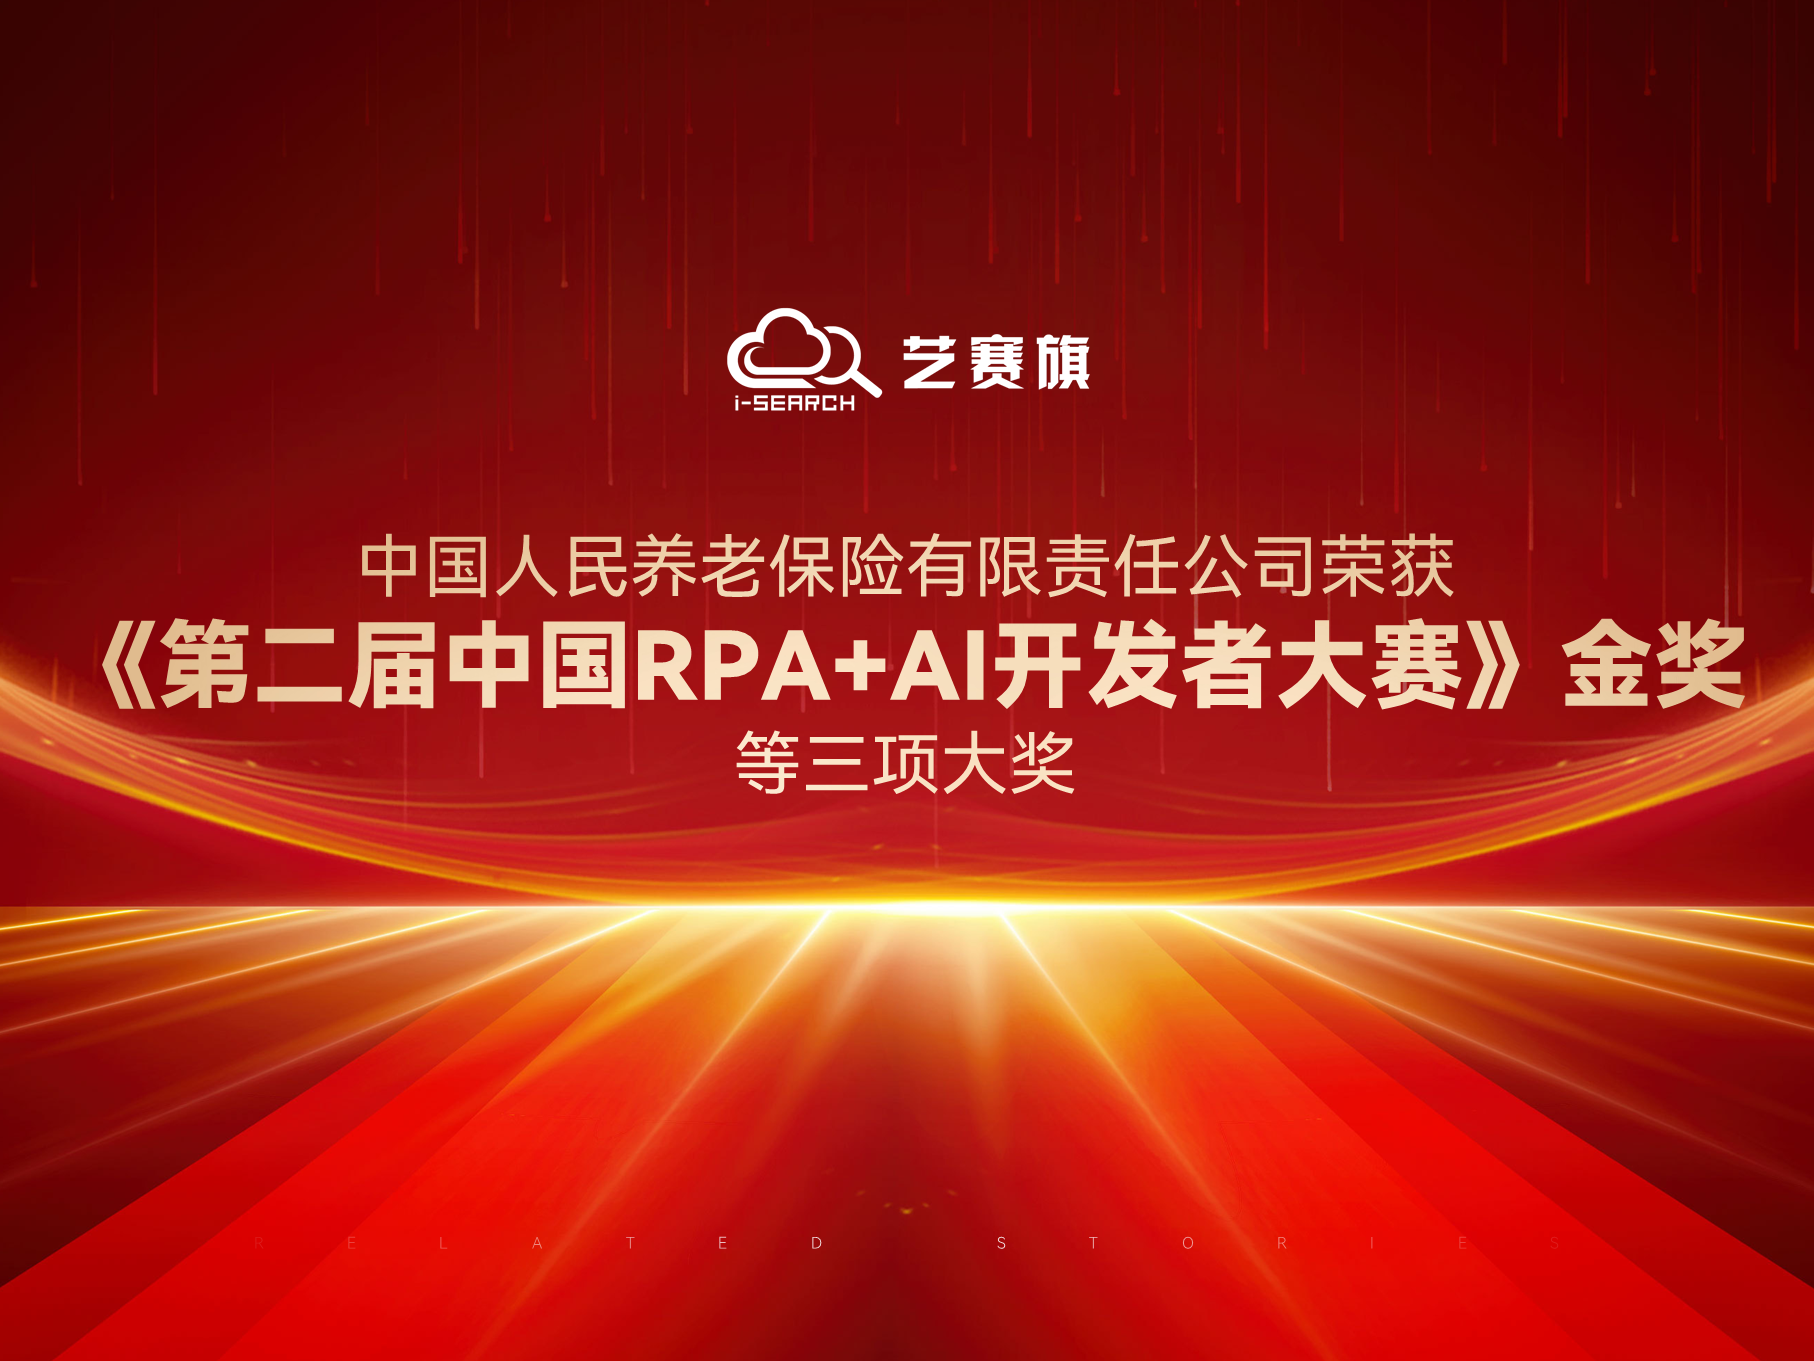 中国人民养老保险有限责任公司荣获“《第二届中国RPA+AI开发者大赛》金奖”等